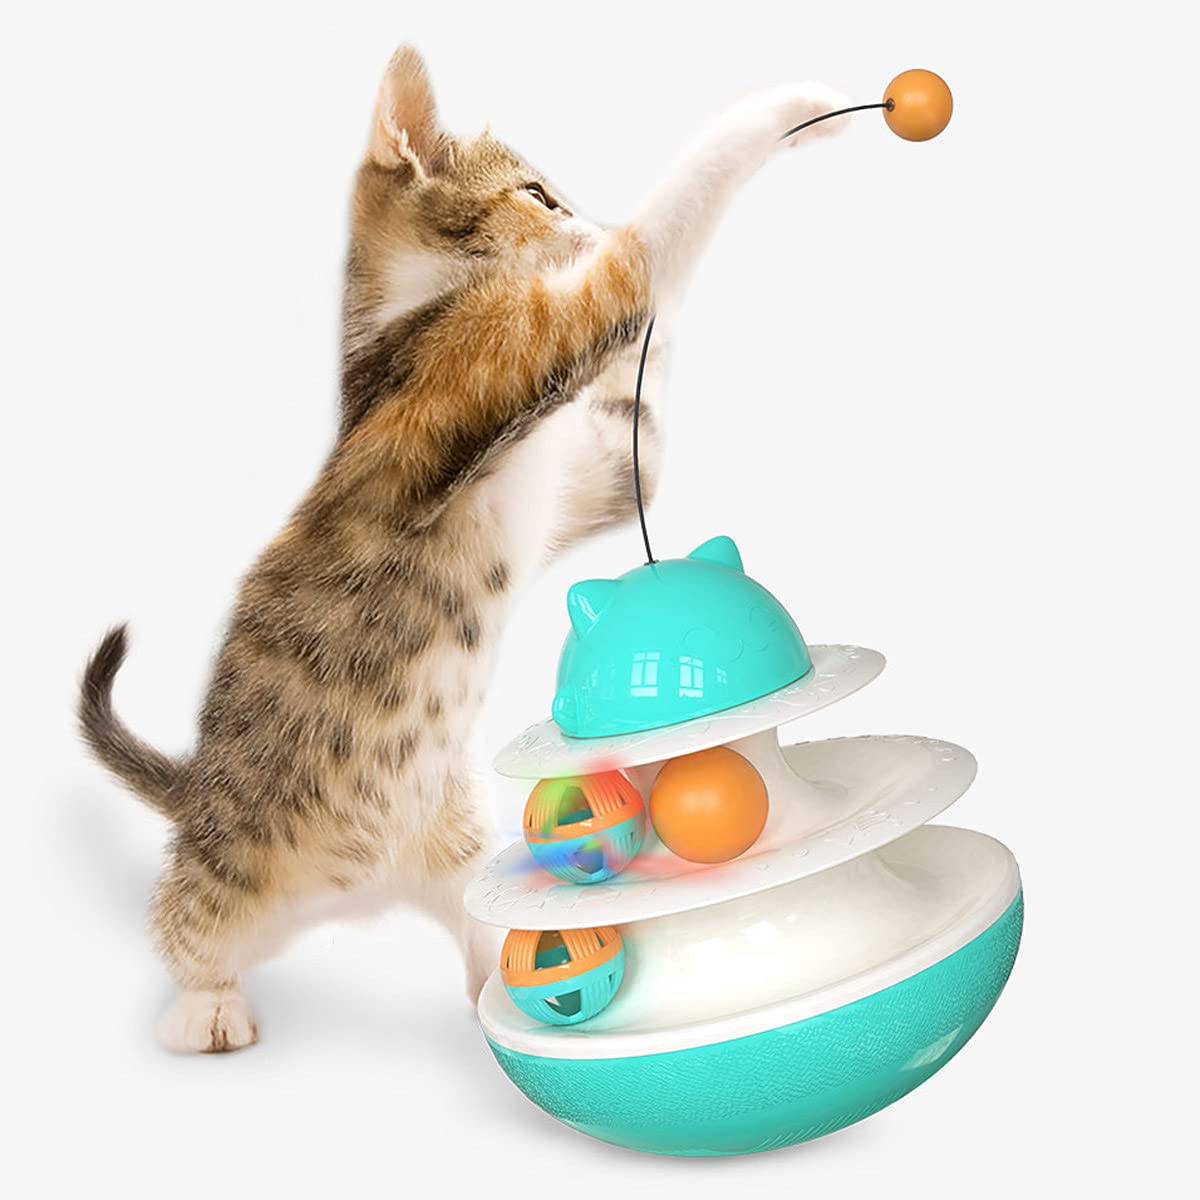 NW Shaking Turntable Katzenspielzeug, erhöht das körperliche Training, verbessert den IQ-Katzenminze, lindert Angstinteragiert mit dem Host Pet Product Pet Toy (blau)